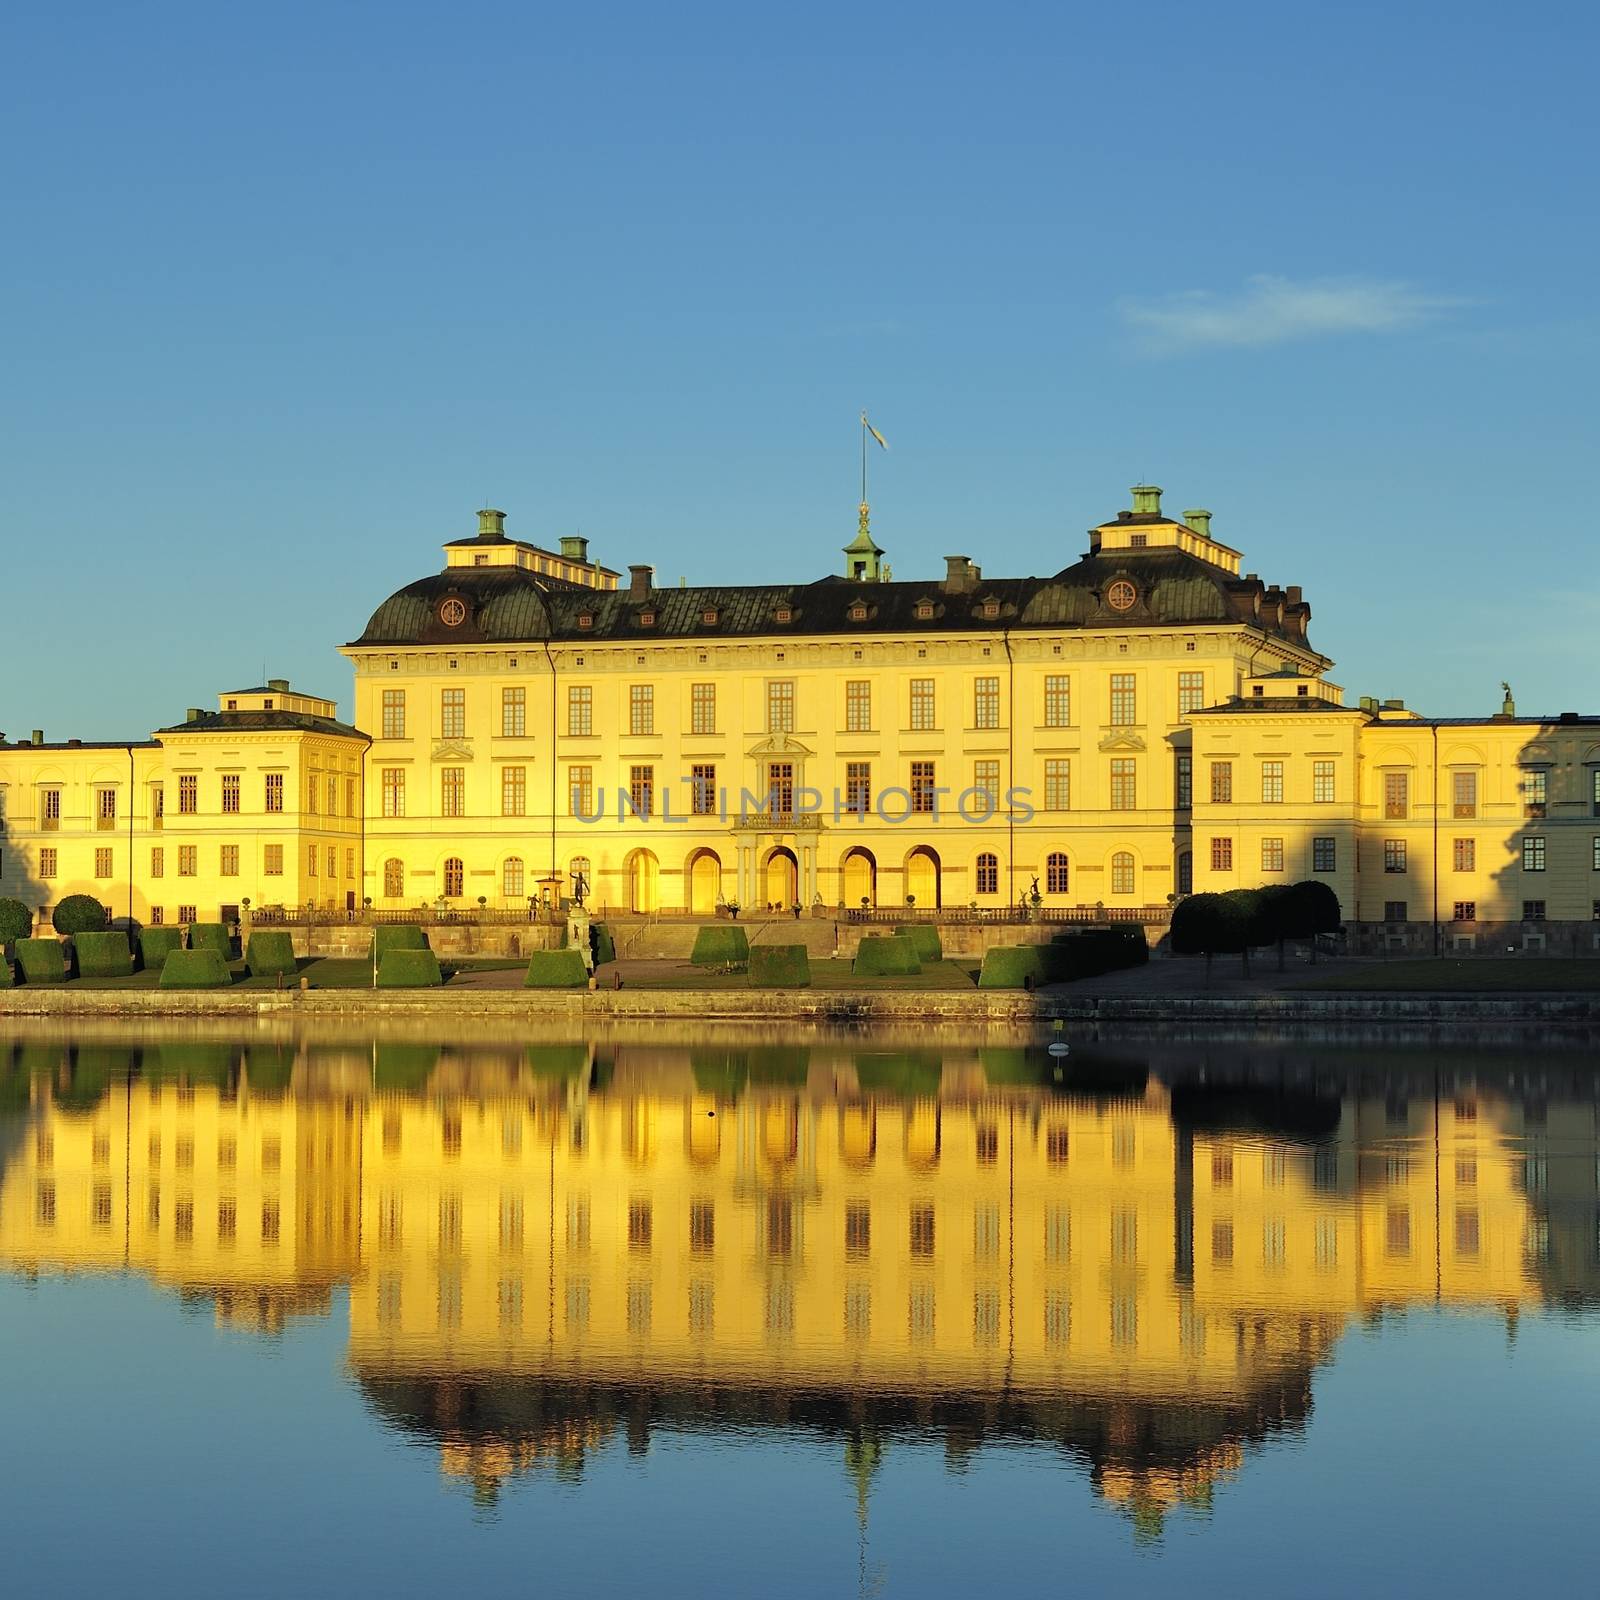 Drottningholm palace, summer residence of the swedish royal family. UNESCO world heritage.